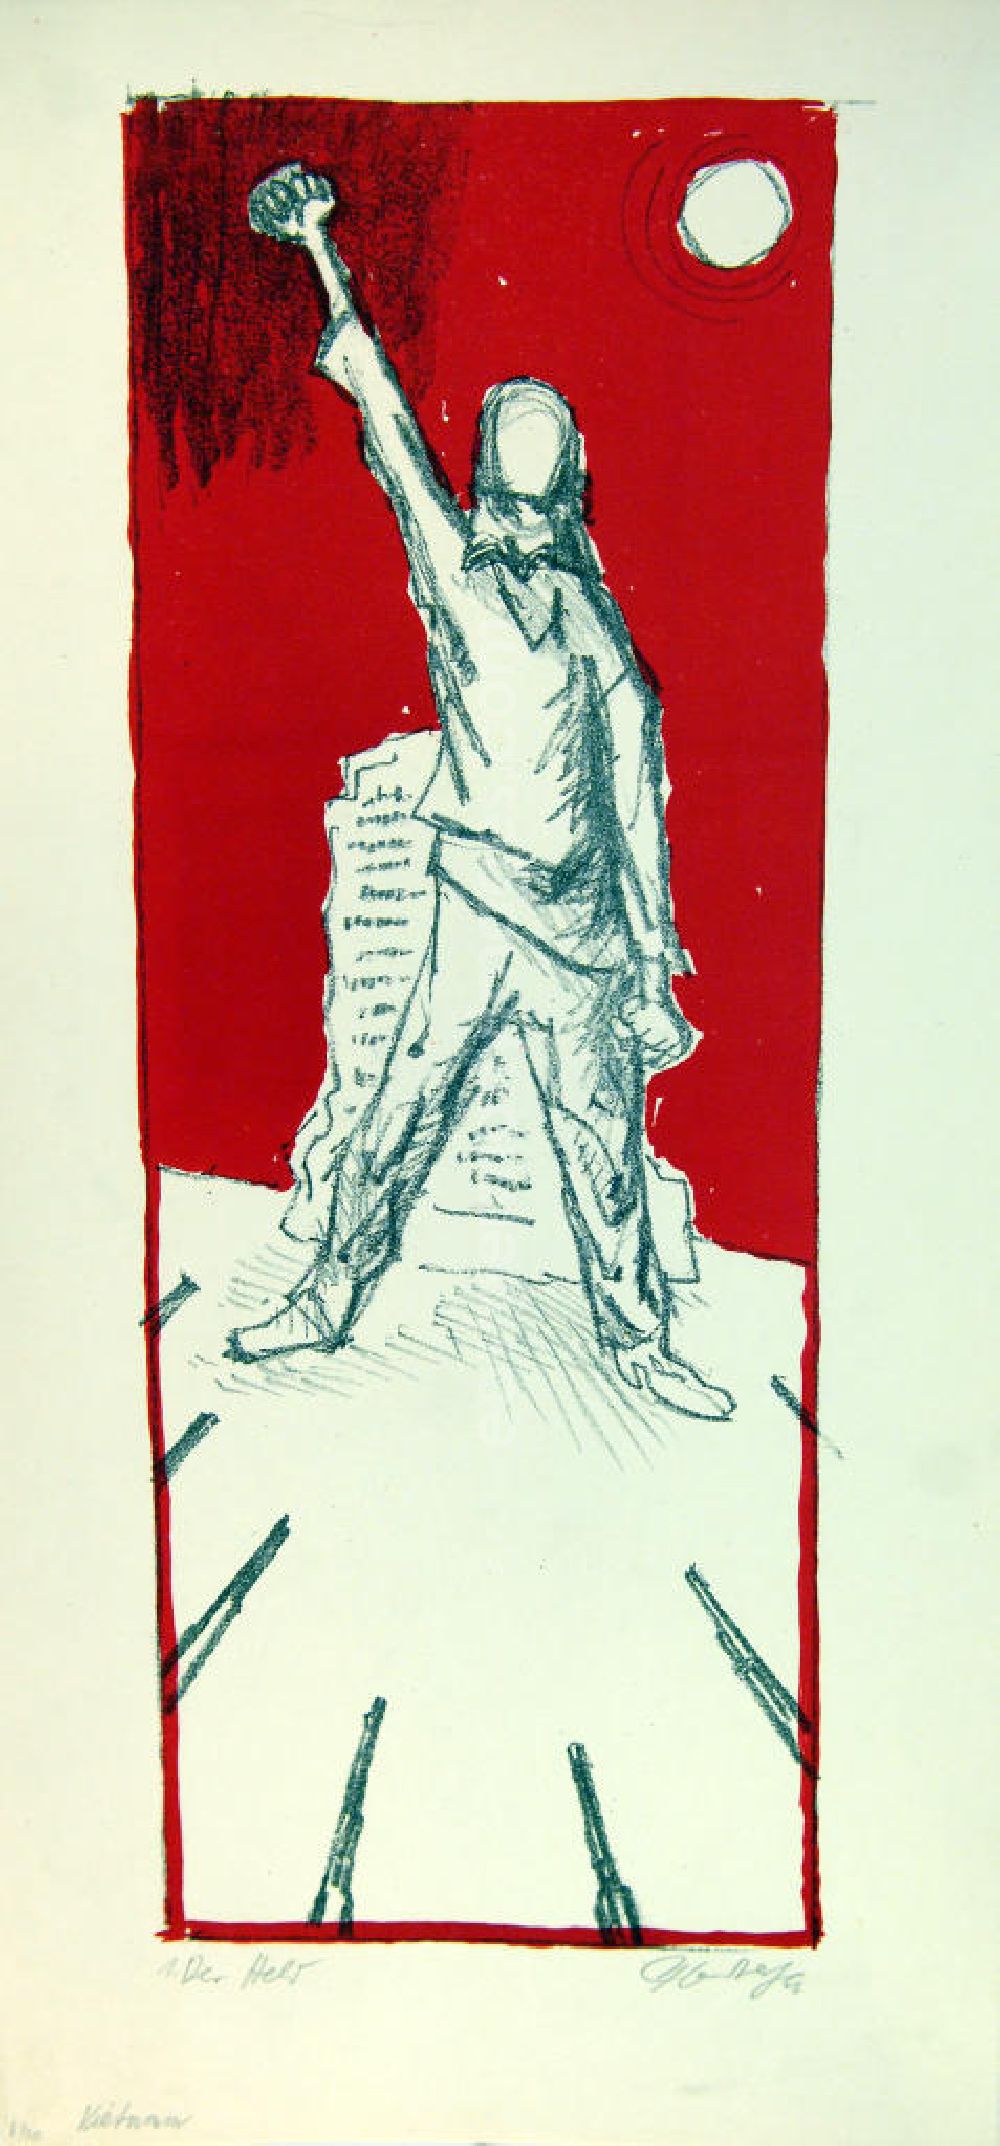 Berlin: Grafik von Herbert Sandberg Vietnam 1. Der Held aus dem Jahr 1966, 47,0x18,0cm Farb-Lithographie, handsigniert, 6/2